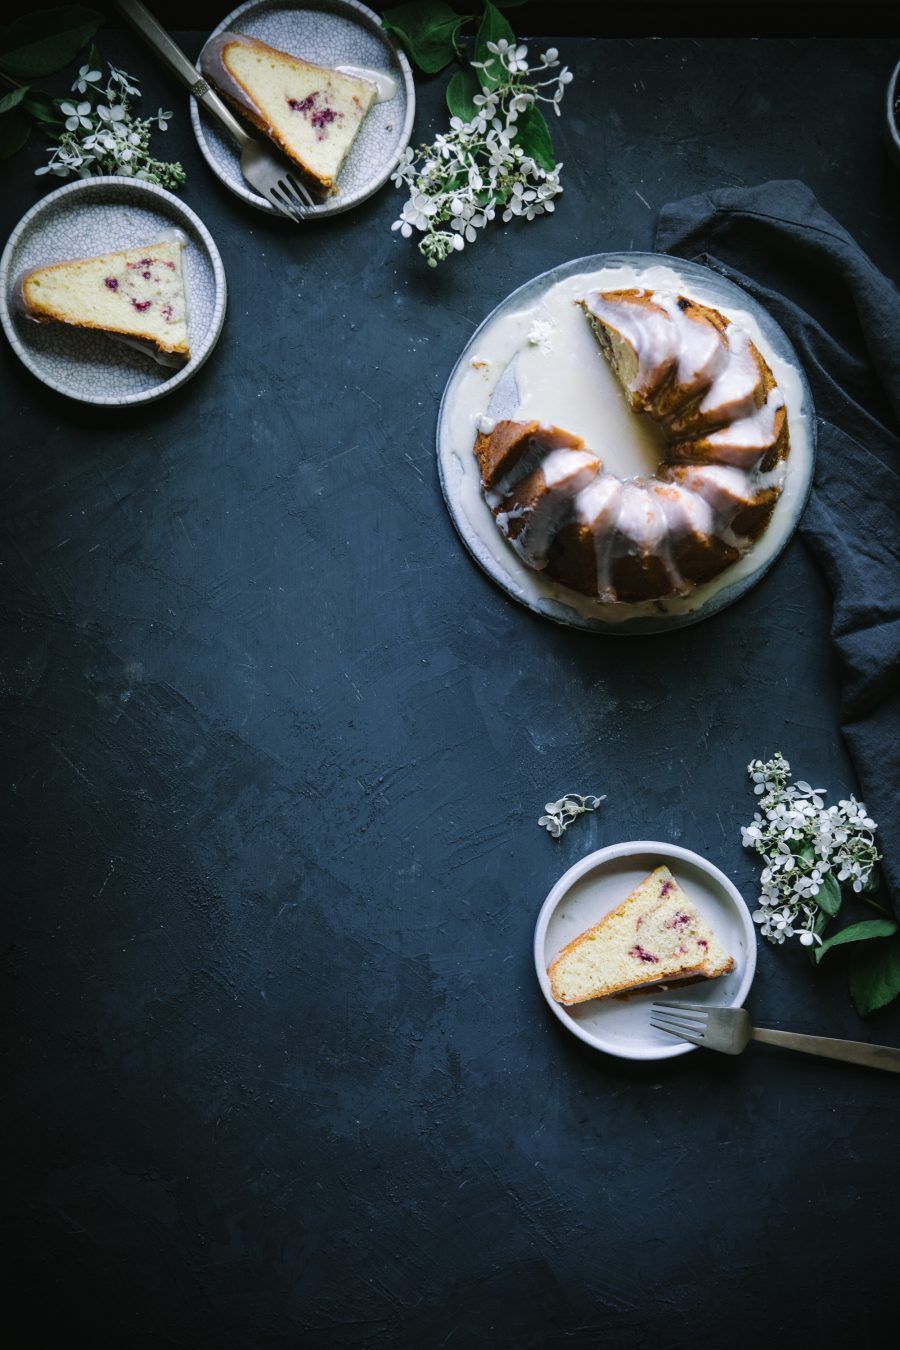 14 fruit cake Photography ideas